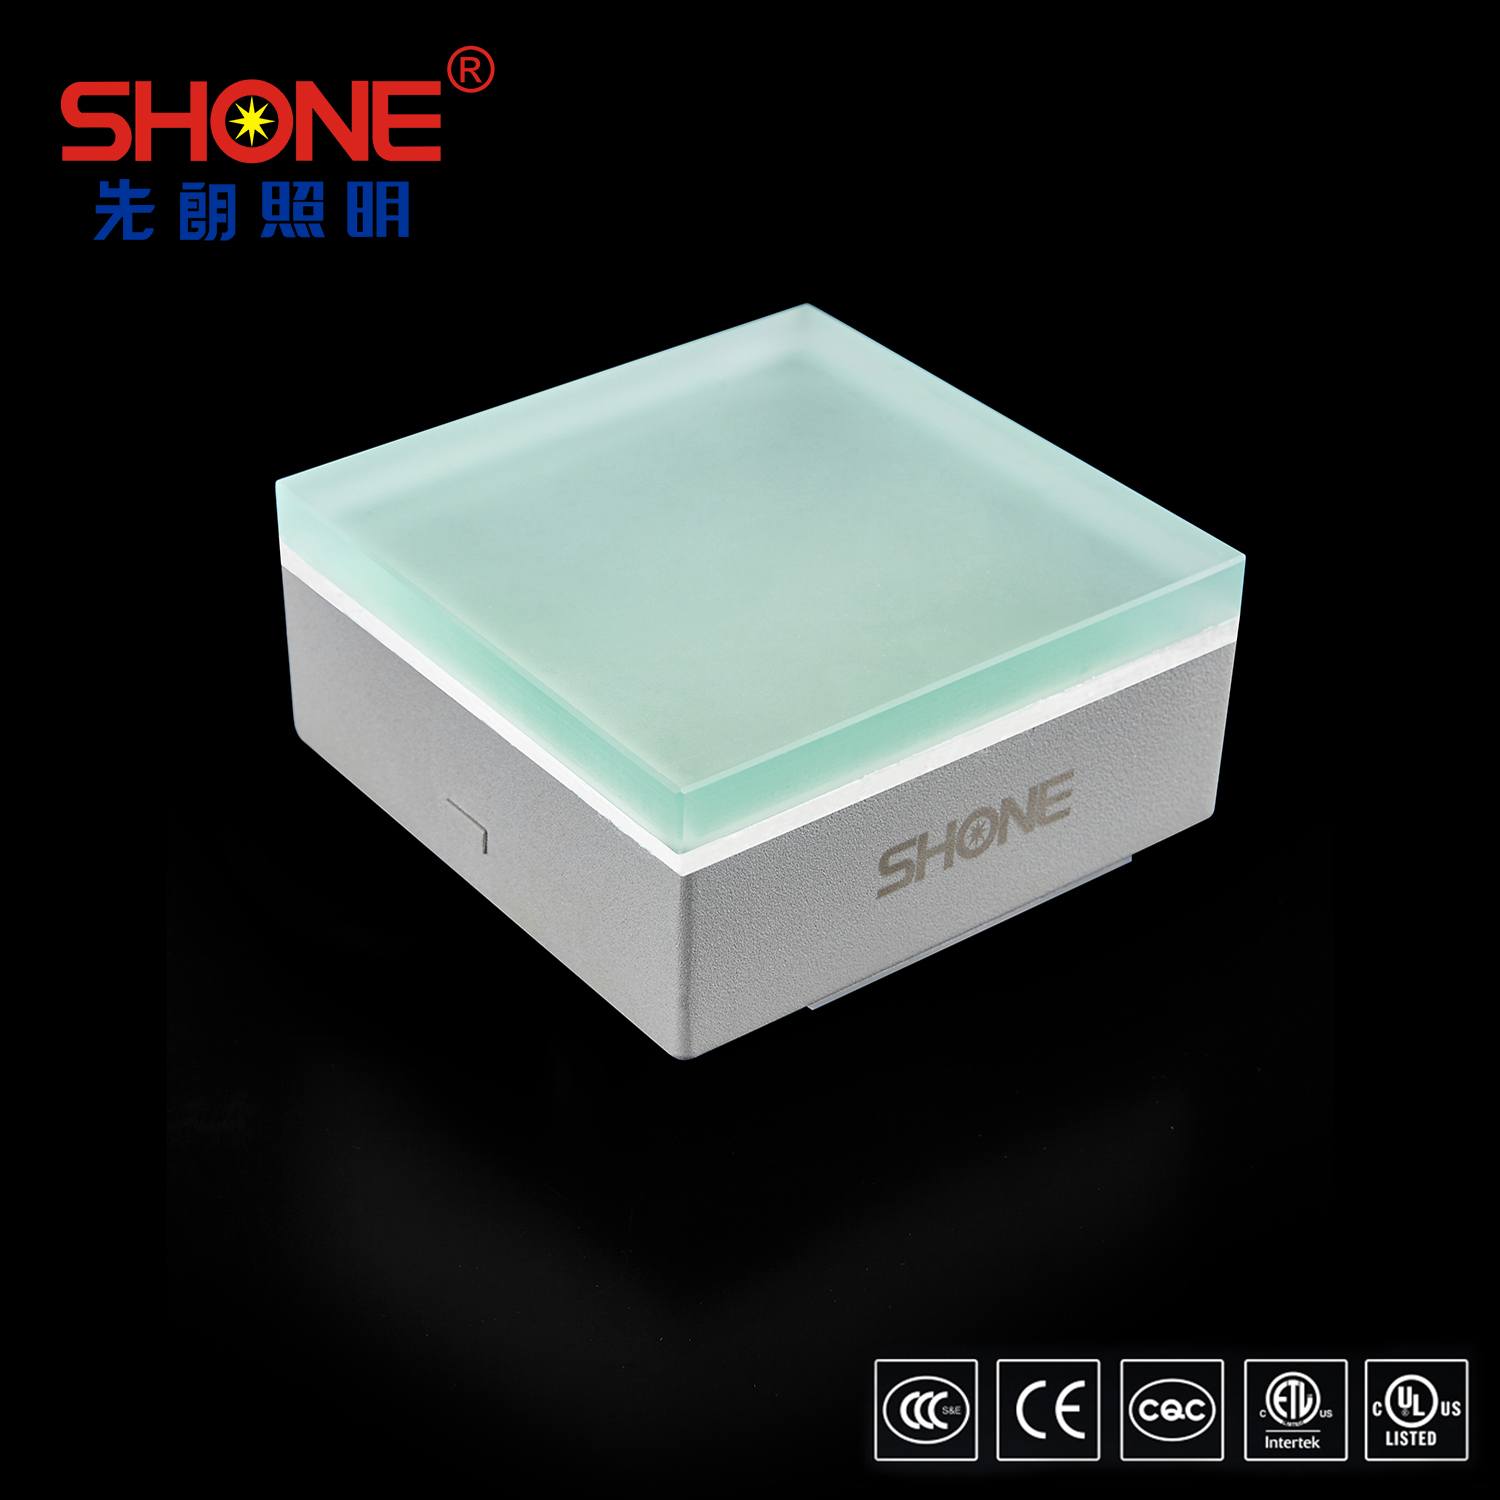 Shone Lighting 100x100 LED Brick LED Tile Light with CE UL ETL Certificates for Outdoor Lighting